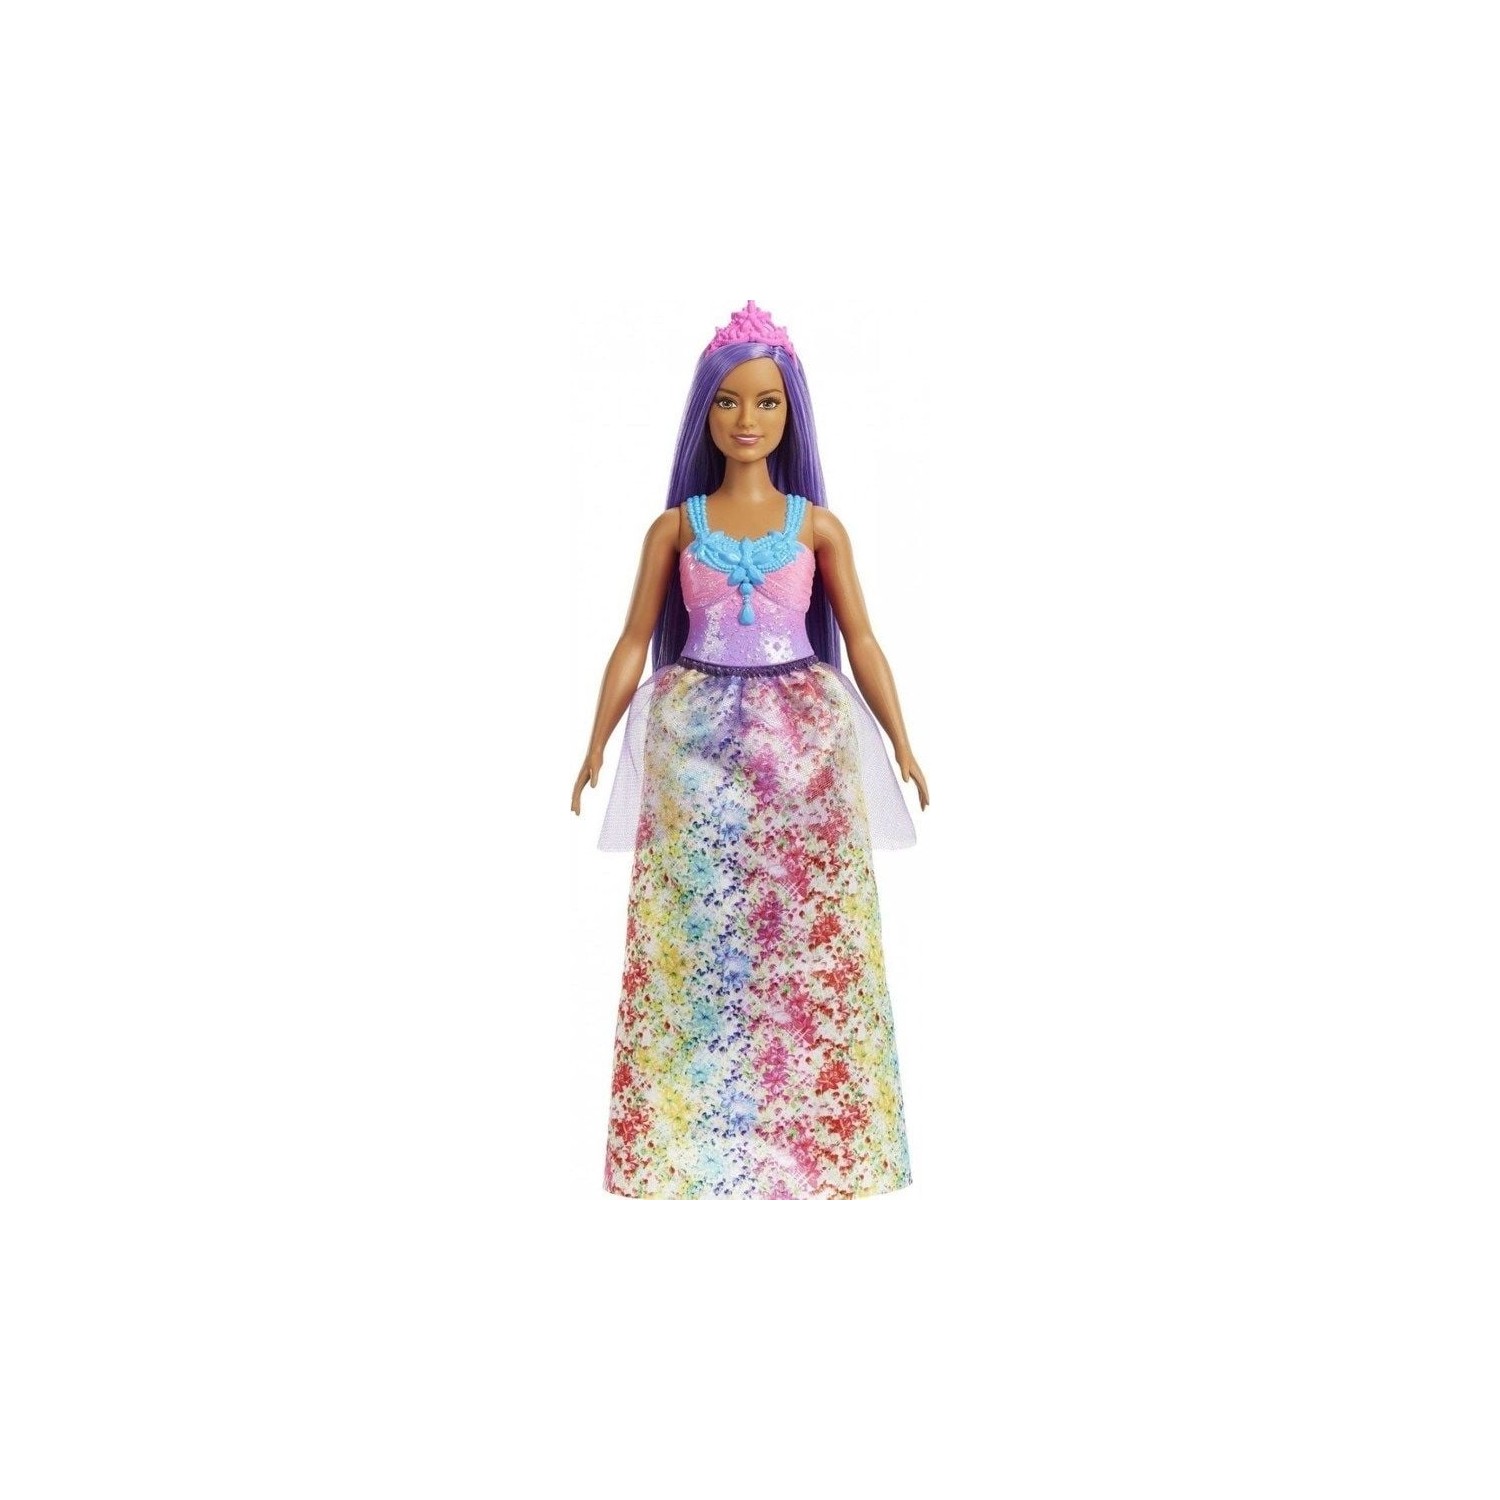 Кукла Barbie Dreamtopia Princess Dolls HGR16 кукла barbie dreamtopia princess dolls fjc94